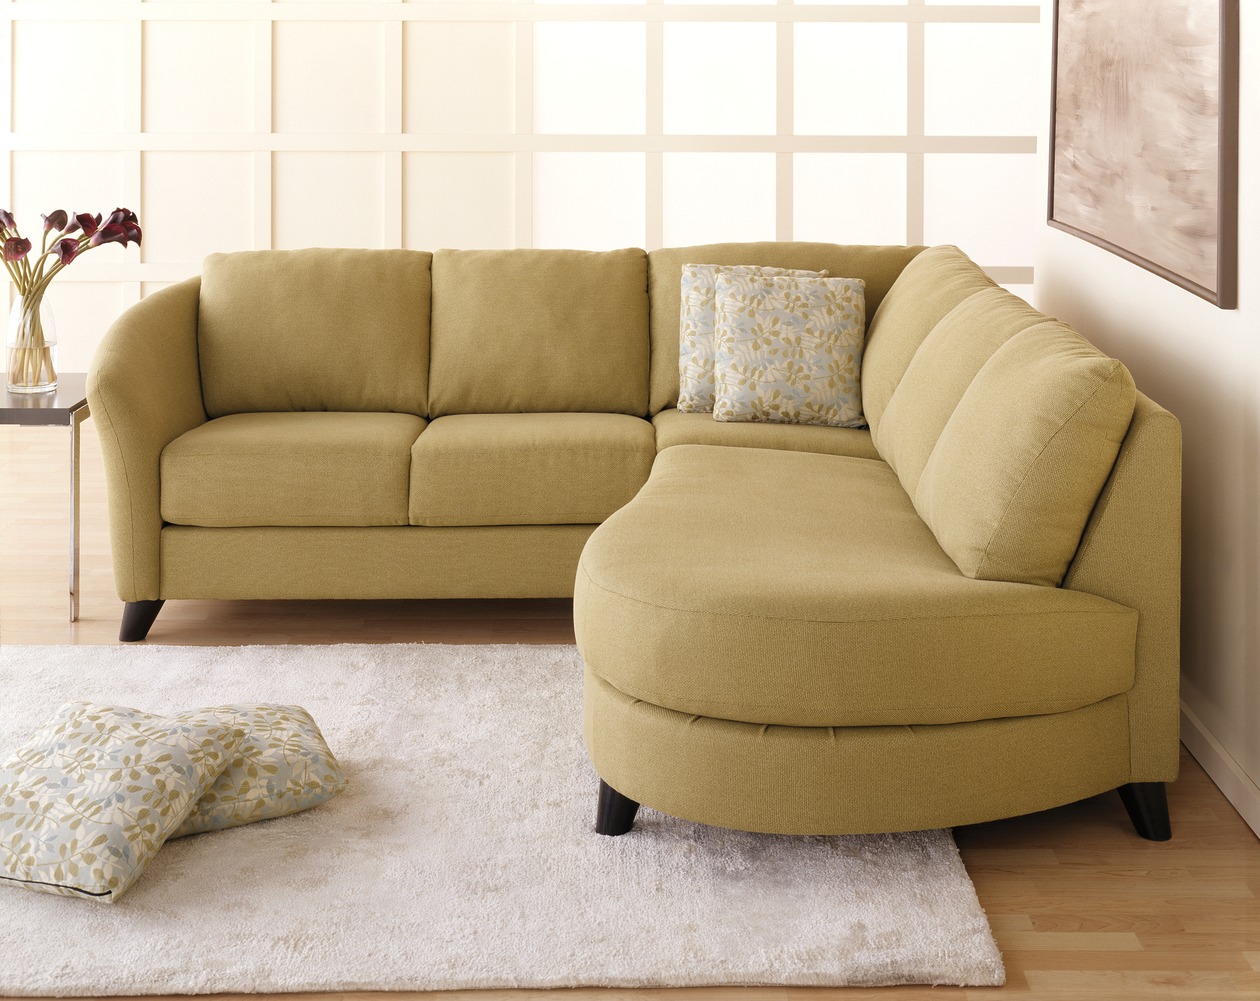 ALULA : sofa, méridienne convertible en lit d'appoint - incluant le futon  et deux coussins ALULA structure bois naturel - 746 - Gris 746 (Futon et 2  coussins)